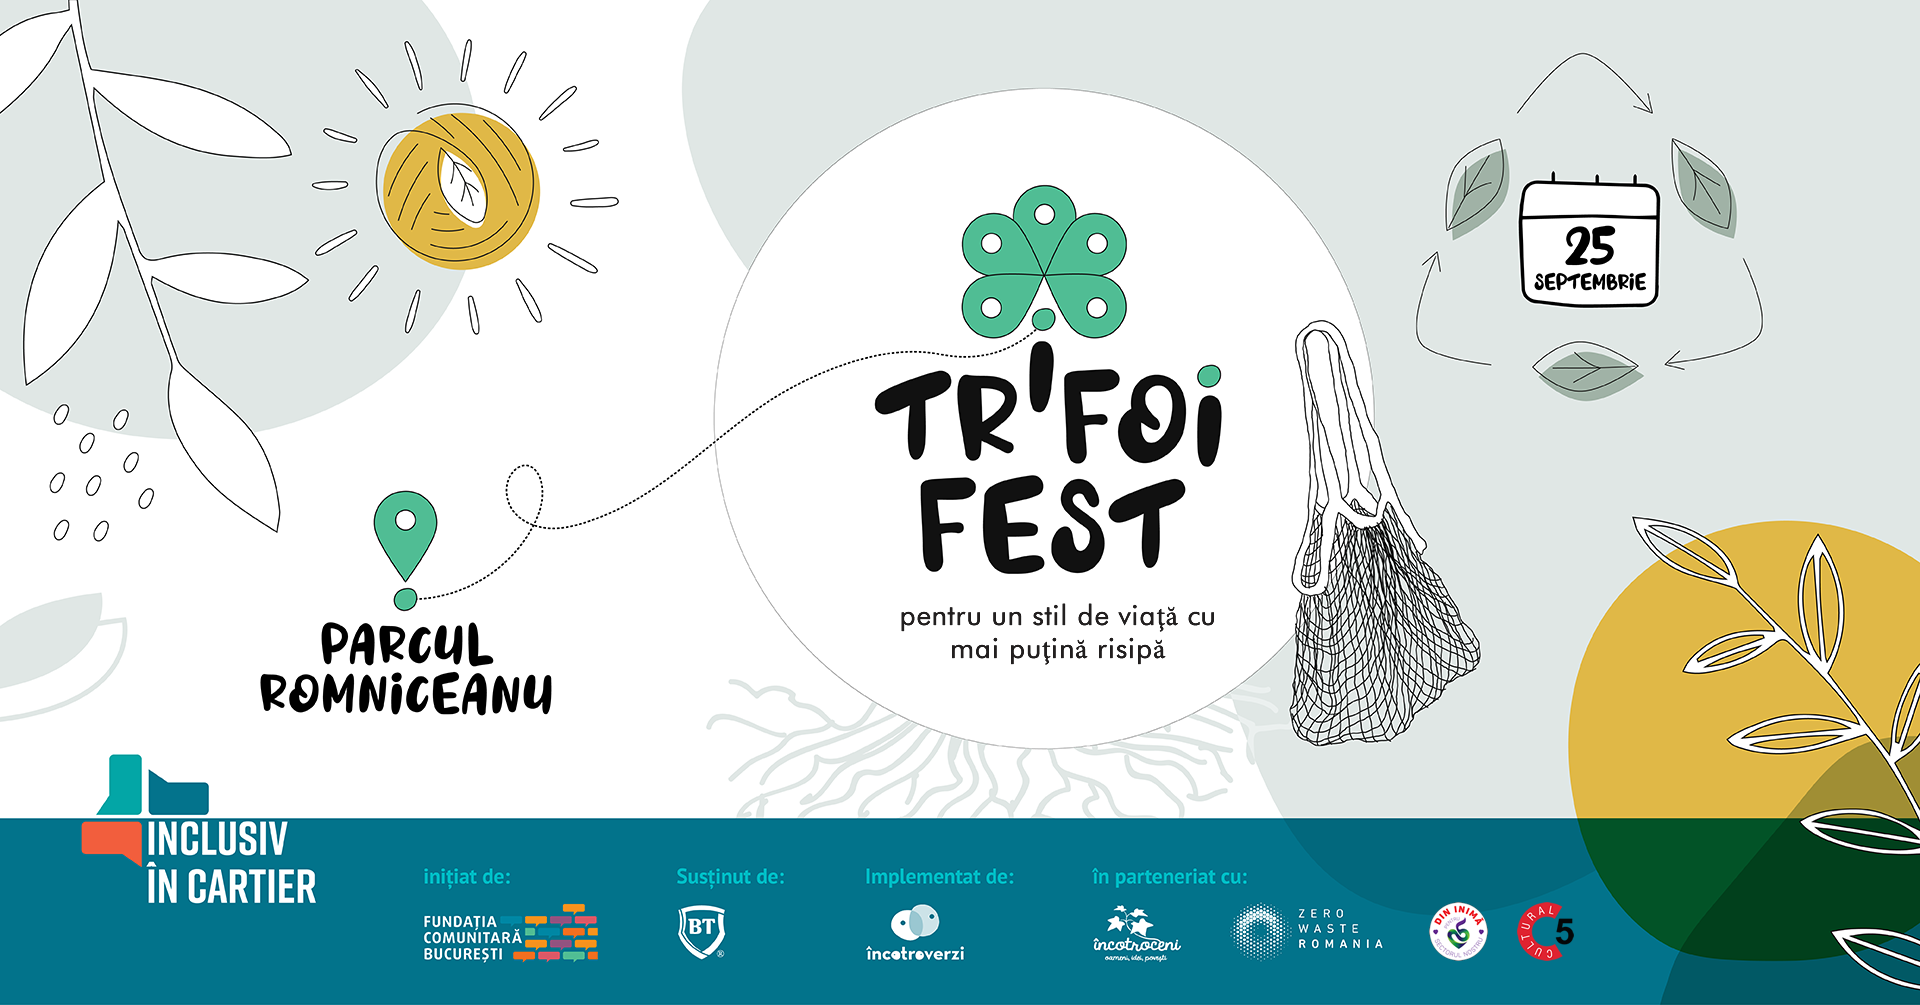 Trifoi Fest: festivalul care va schimba organizarea de evenimente în România